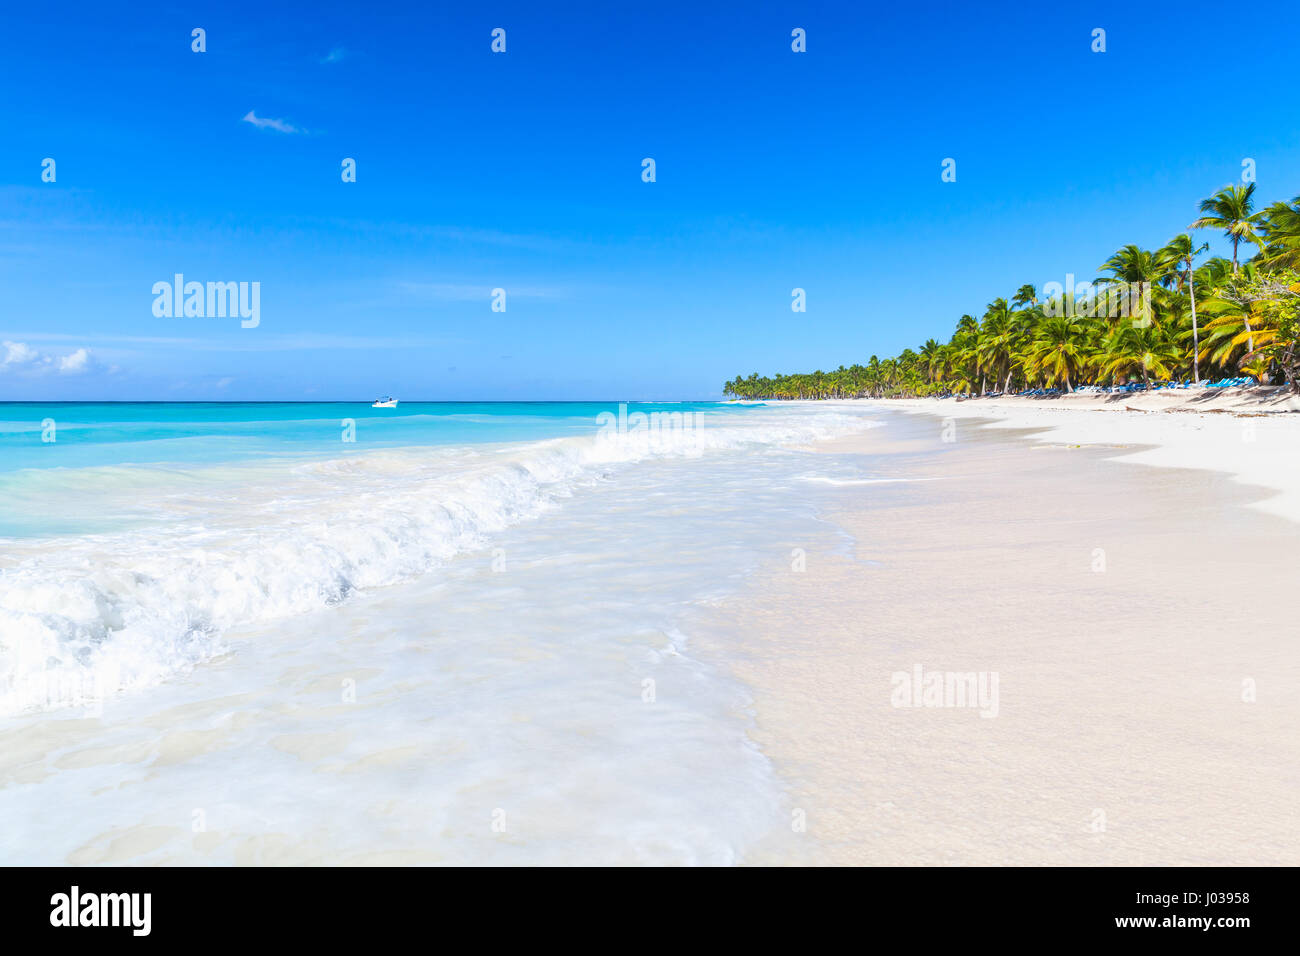 Las palmeras crecen en la playa de arena blanca. Mar Caribe, República Dominicana, Costa de la isla Saona, el popular complejo turístico Foto de stock